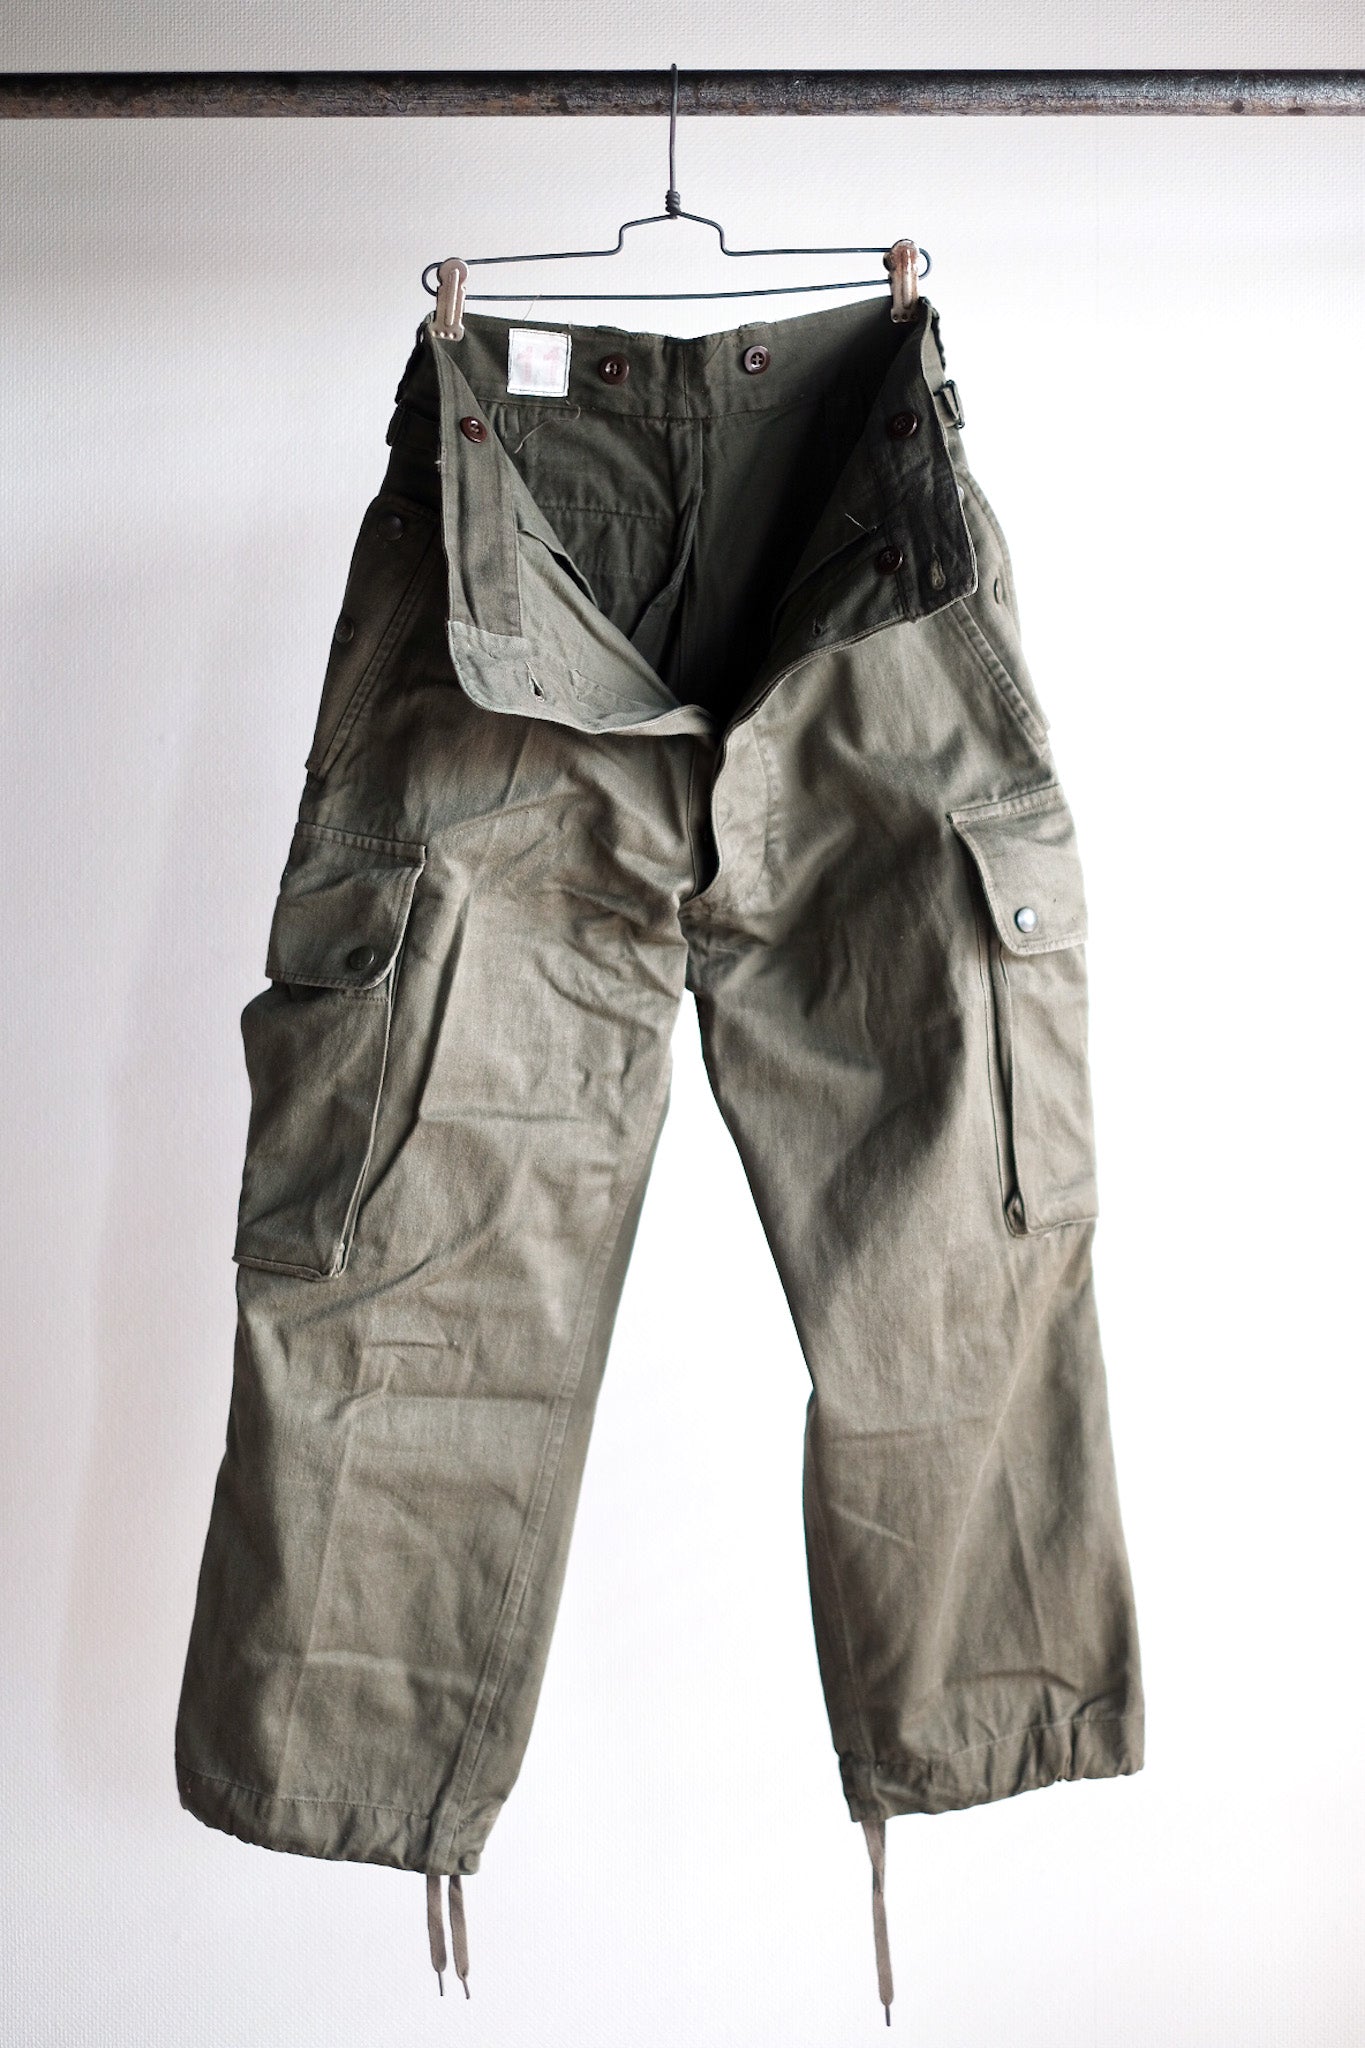 [〜60年代]法國陸軍TAP47/56傘兵褲子大小。11